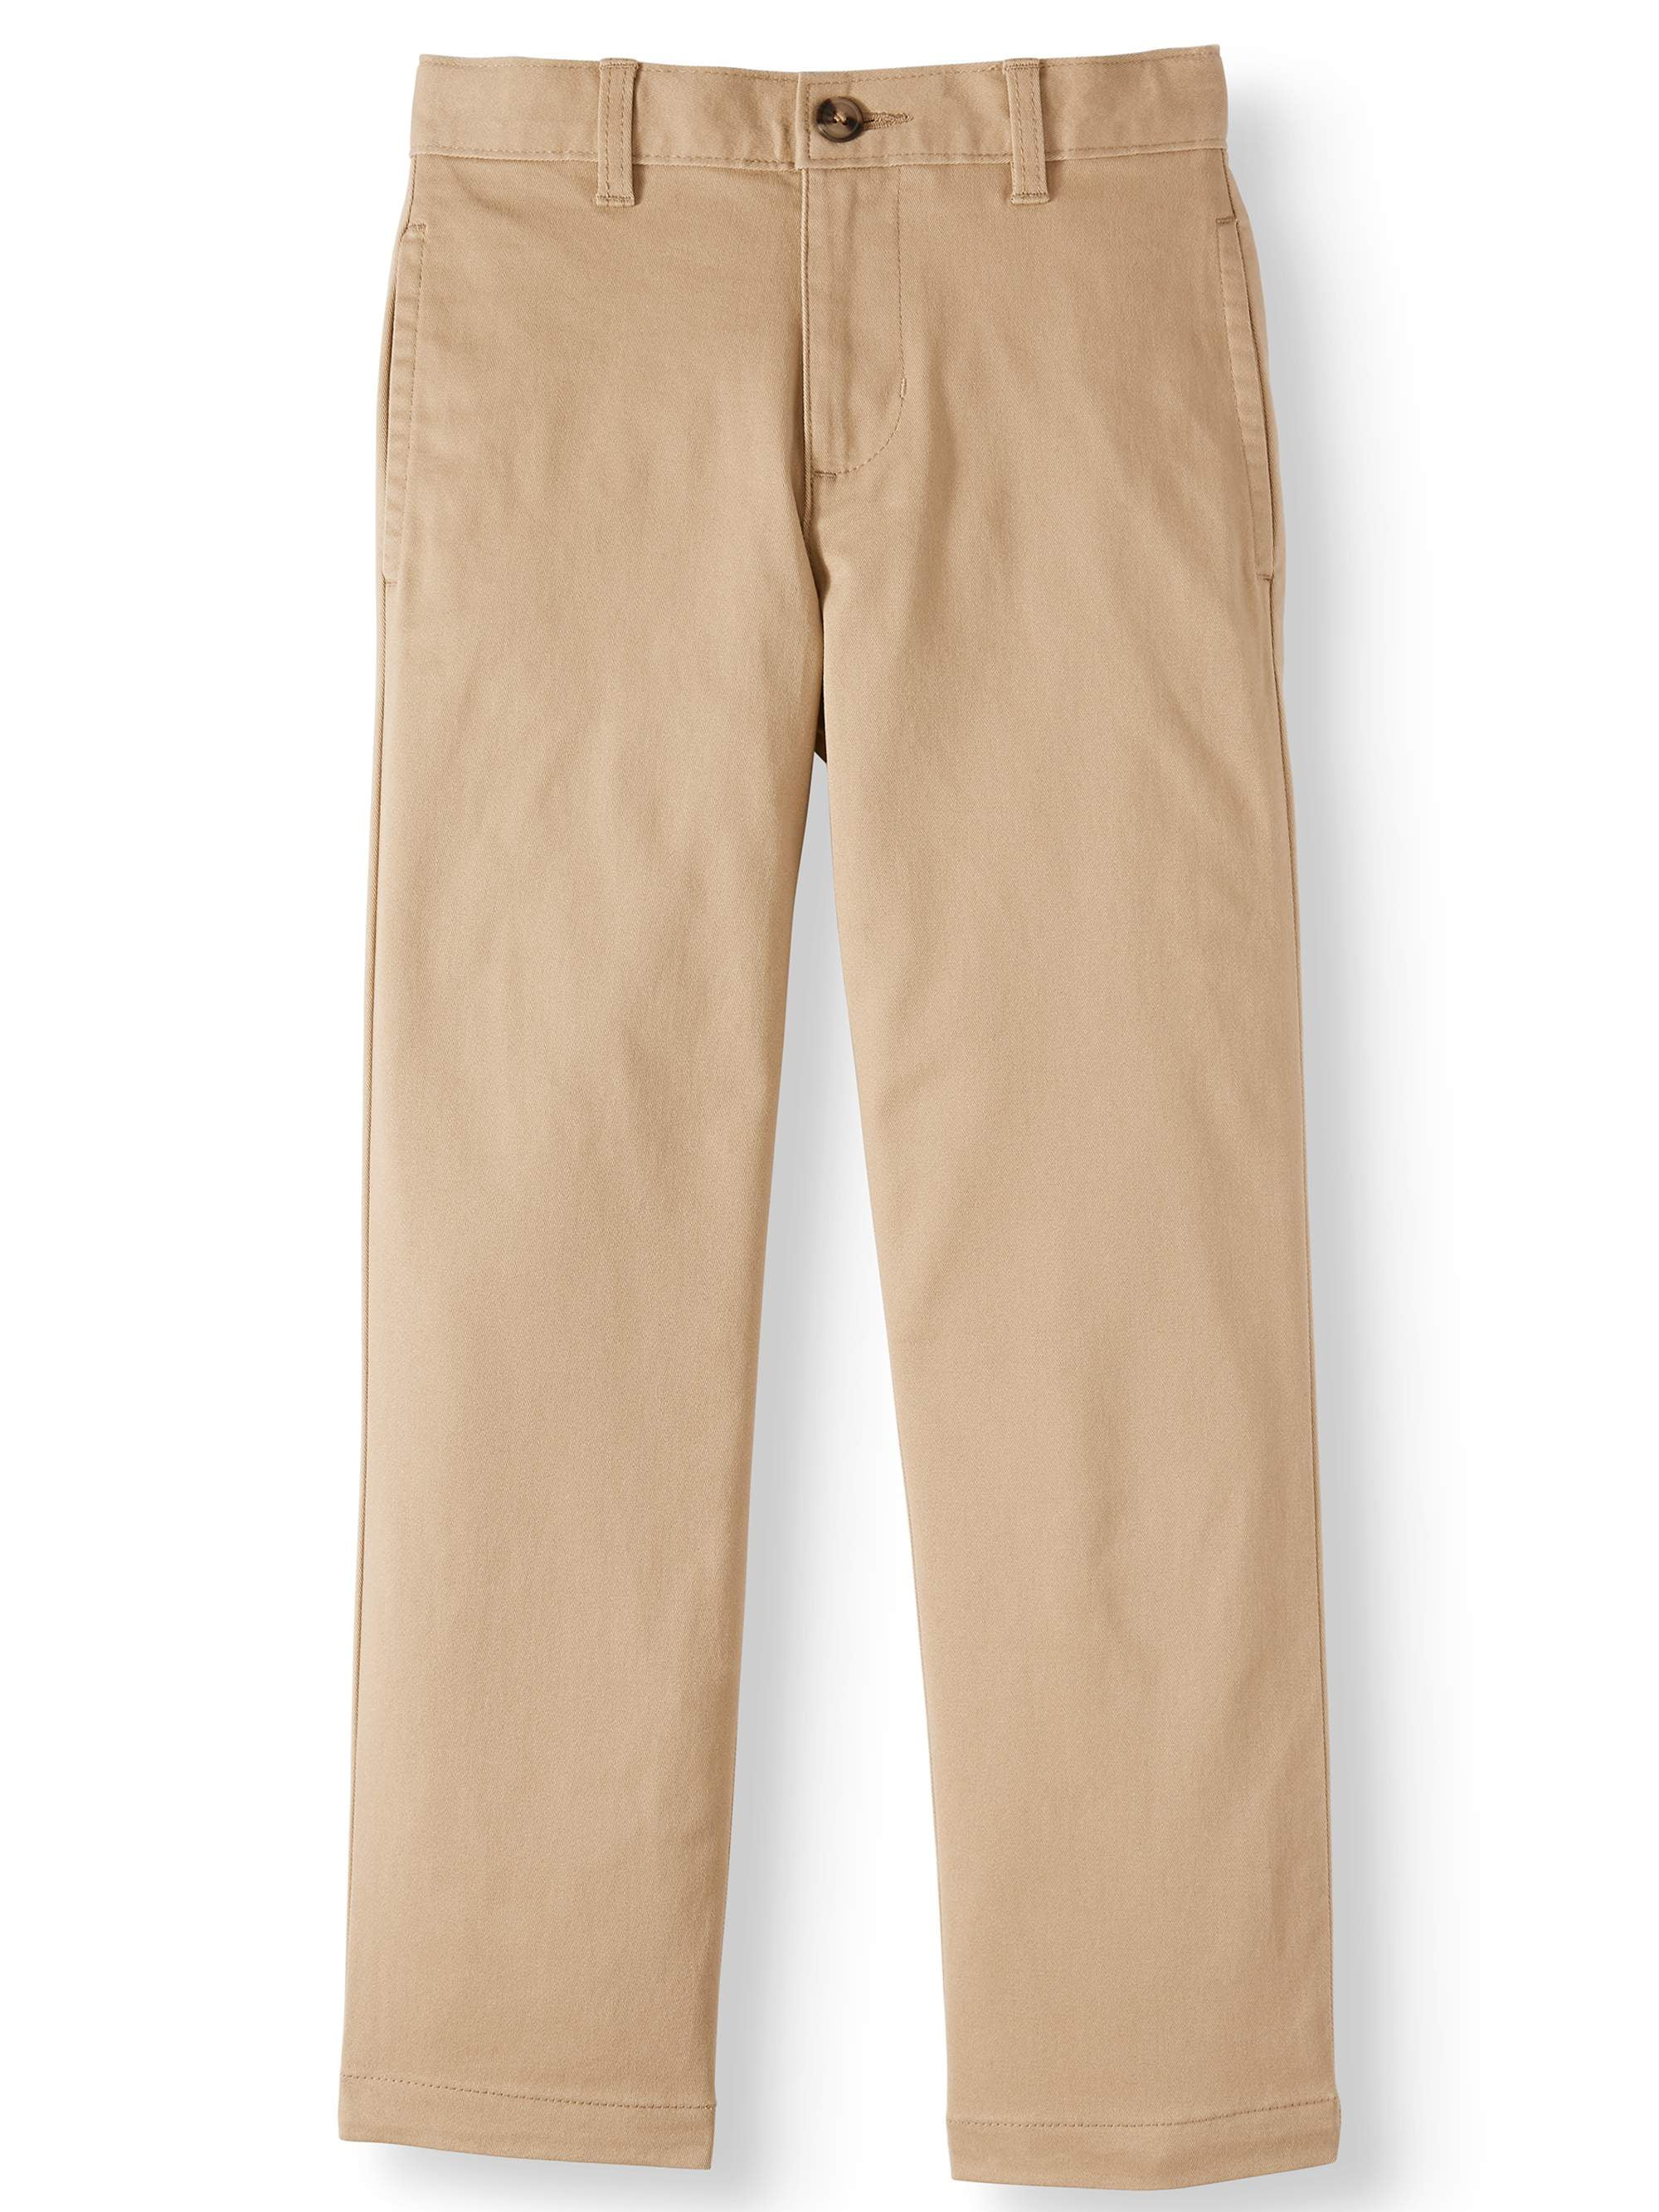 School Uniform Boys Iron Knee Blend Plain Front Chino Pants | Lands' End